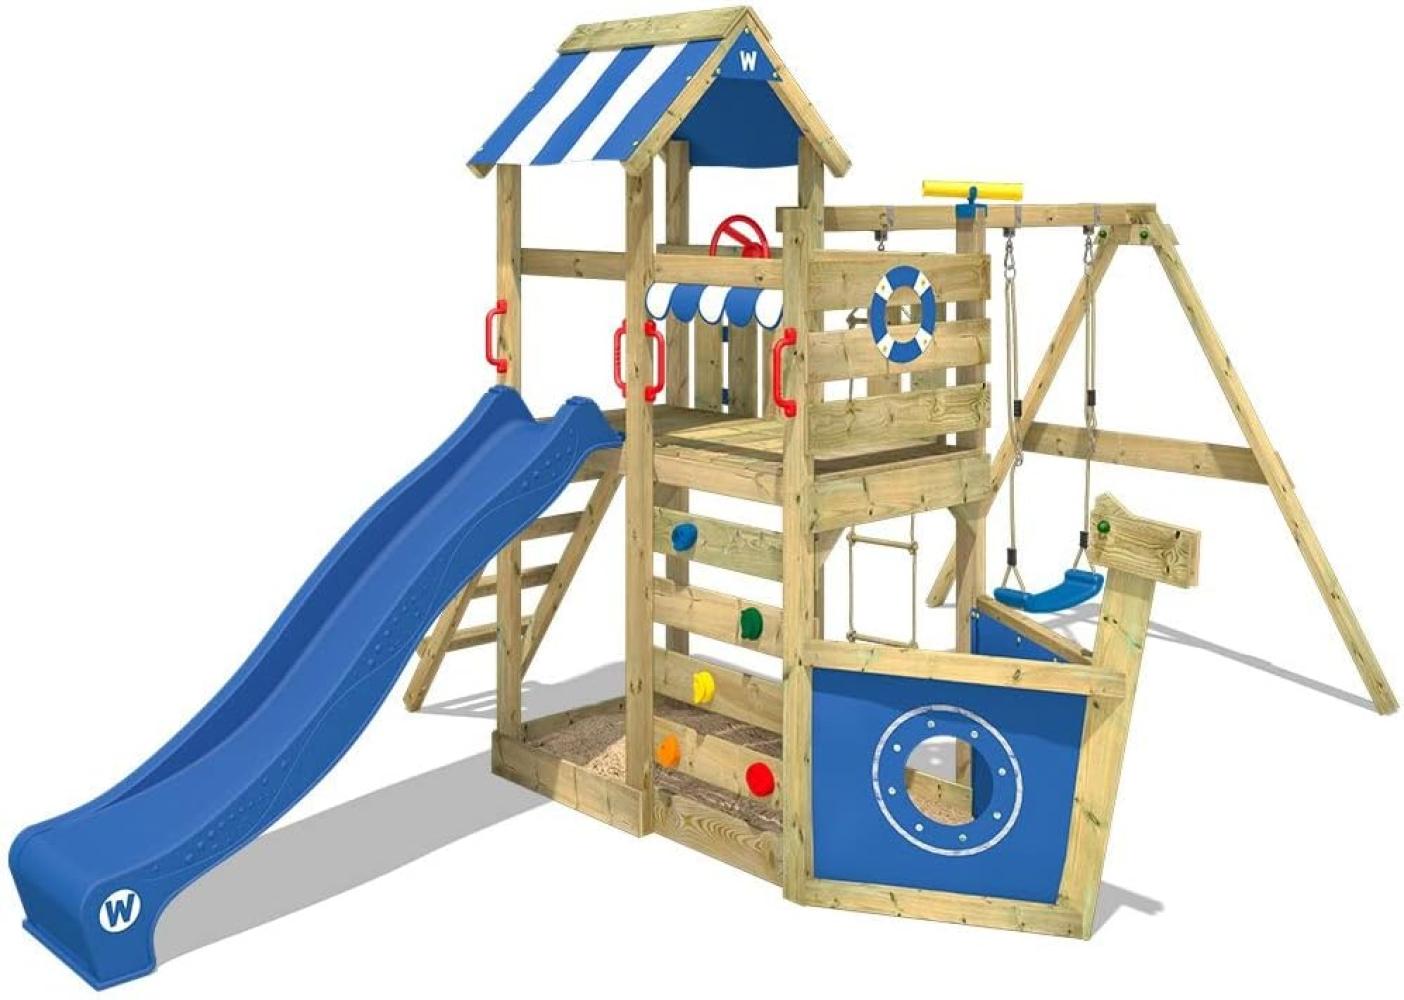 WICKEY 'Spielturm Wickey SeaFlyer', mit Schaukel, blauer Rutsche, Baumhaus mit Sandkasten, Kletterleiter & Spiel-Zubehör Bild 1